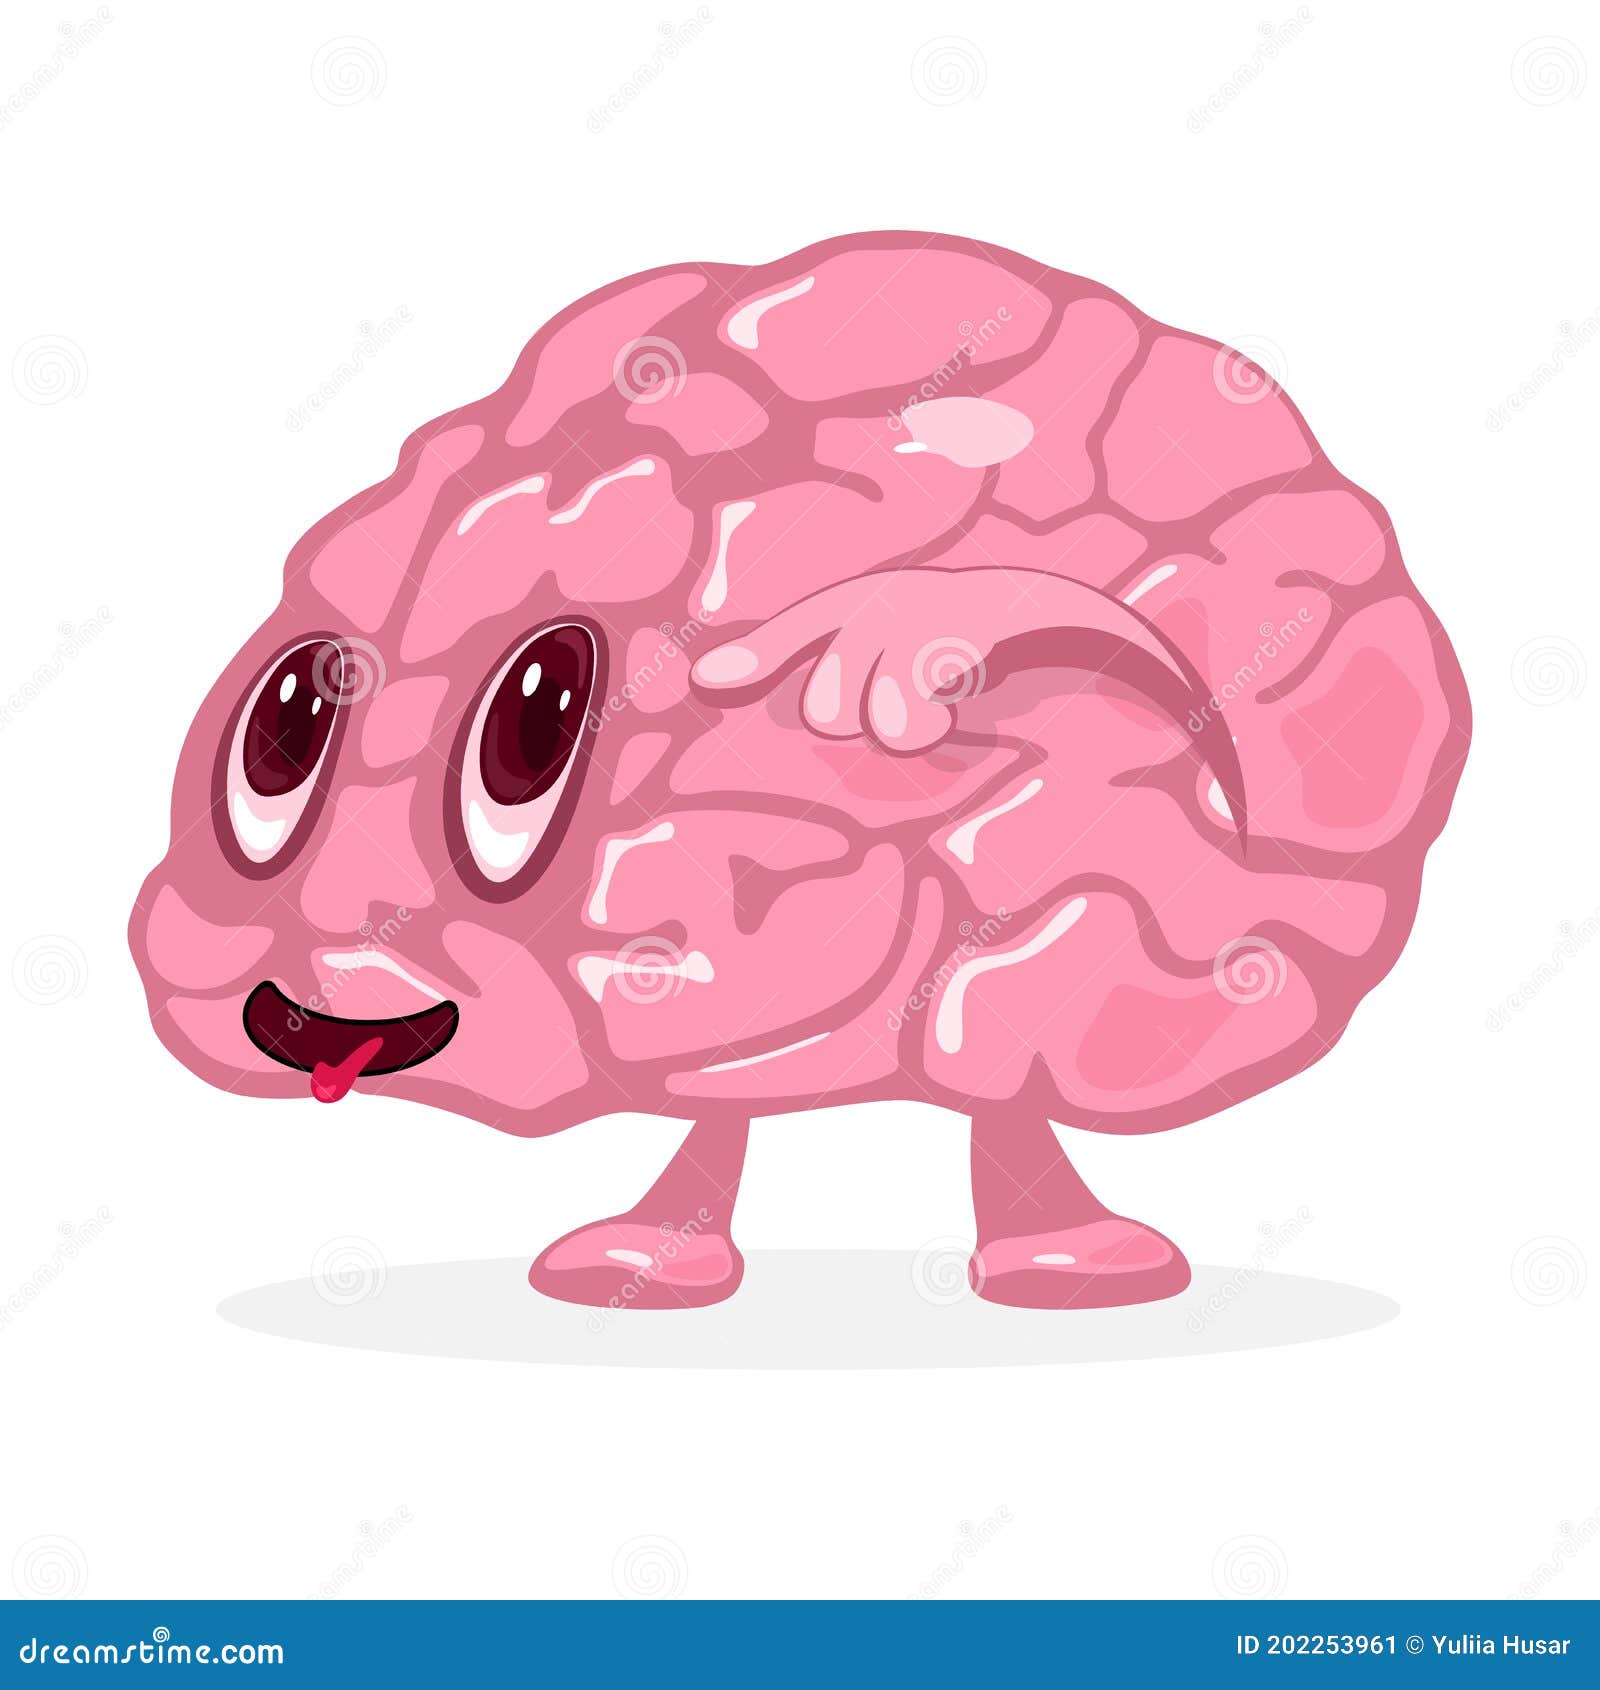 Cartoon Human Brain Character Stock Illustration - Illustration of ...